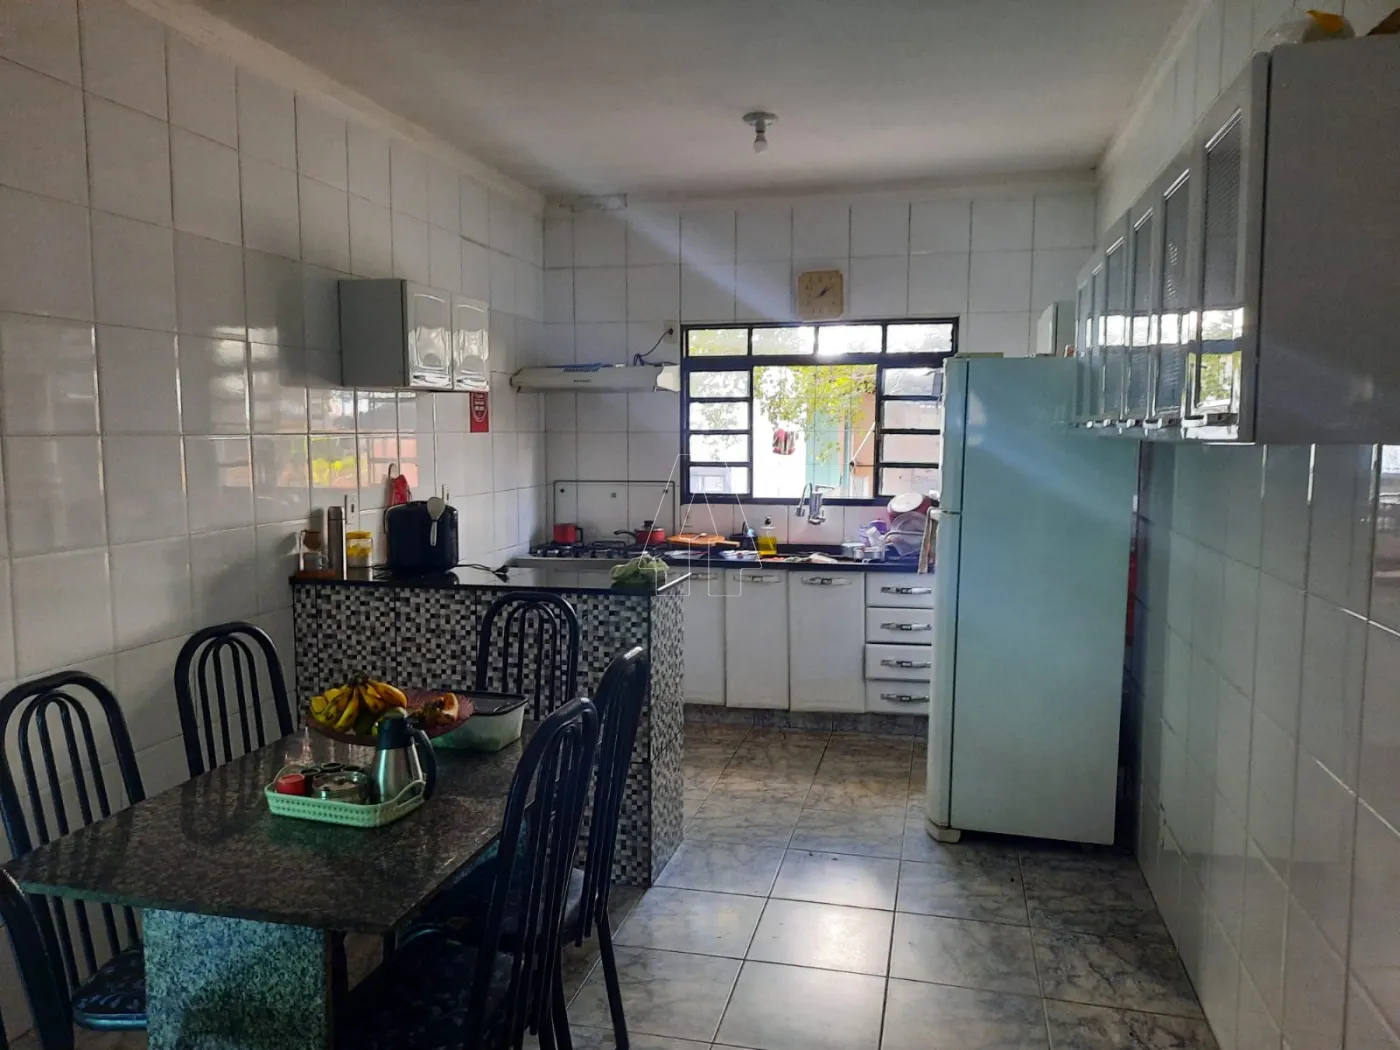 Comprar Casa / Residencial em Araçatuba R$ 280.000,00 - Foto 2